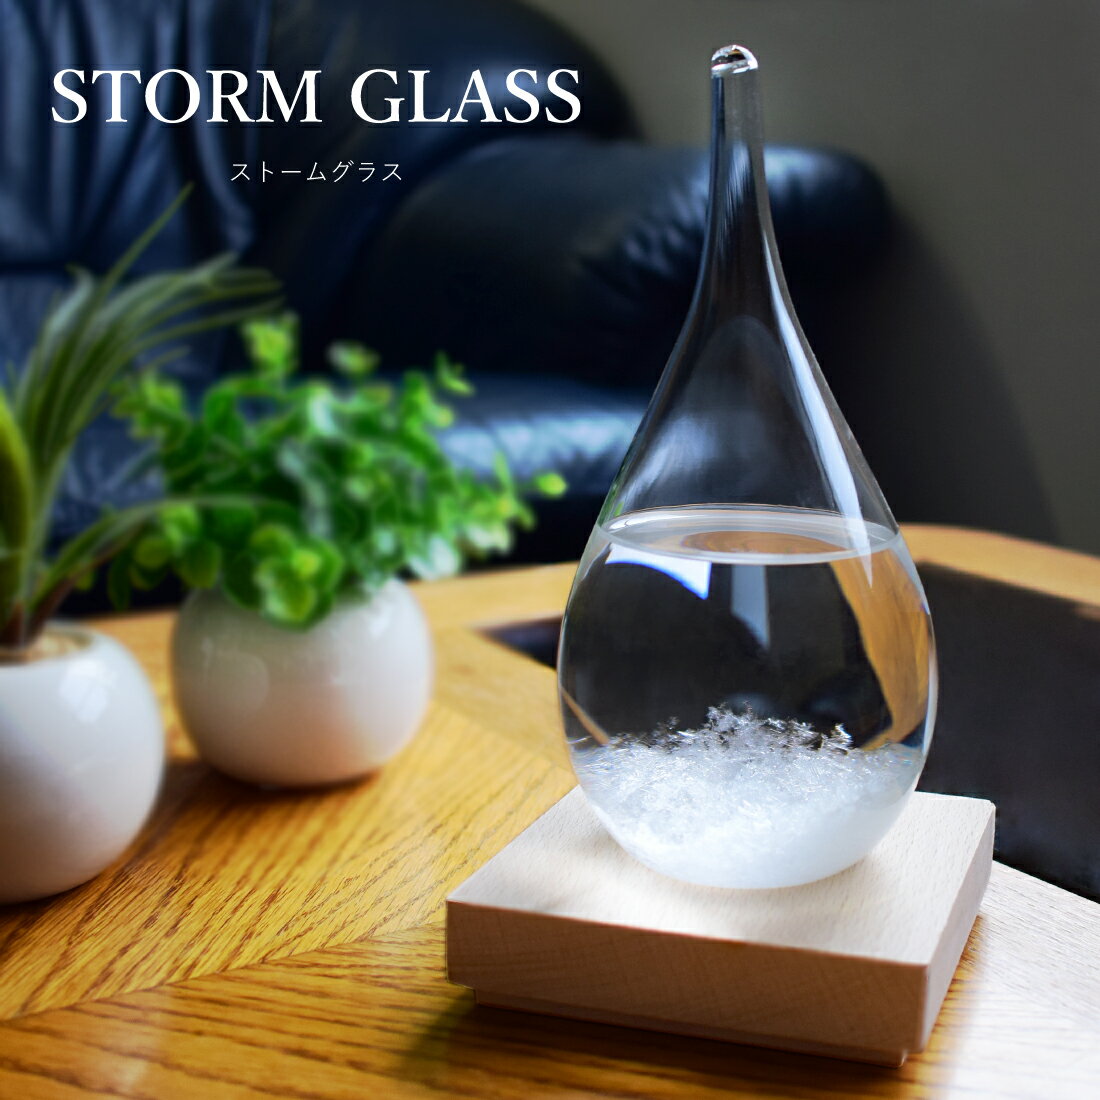 ストームグラス ガラス 天気予報ボトル ストーム瓶 Large 気象予報器 結晶観察器 しずく型 水滴状 インテリア 小物 贈り物 プレゼント 置物の商品画像